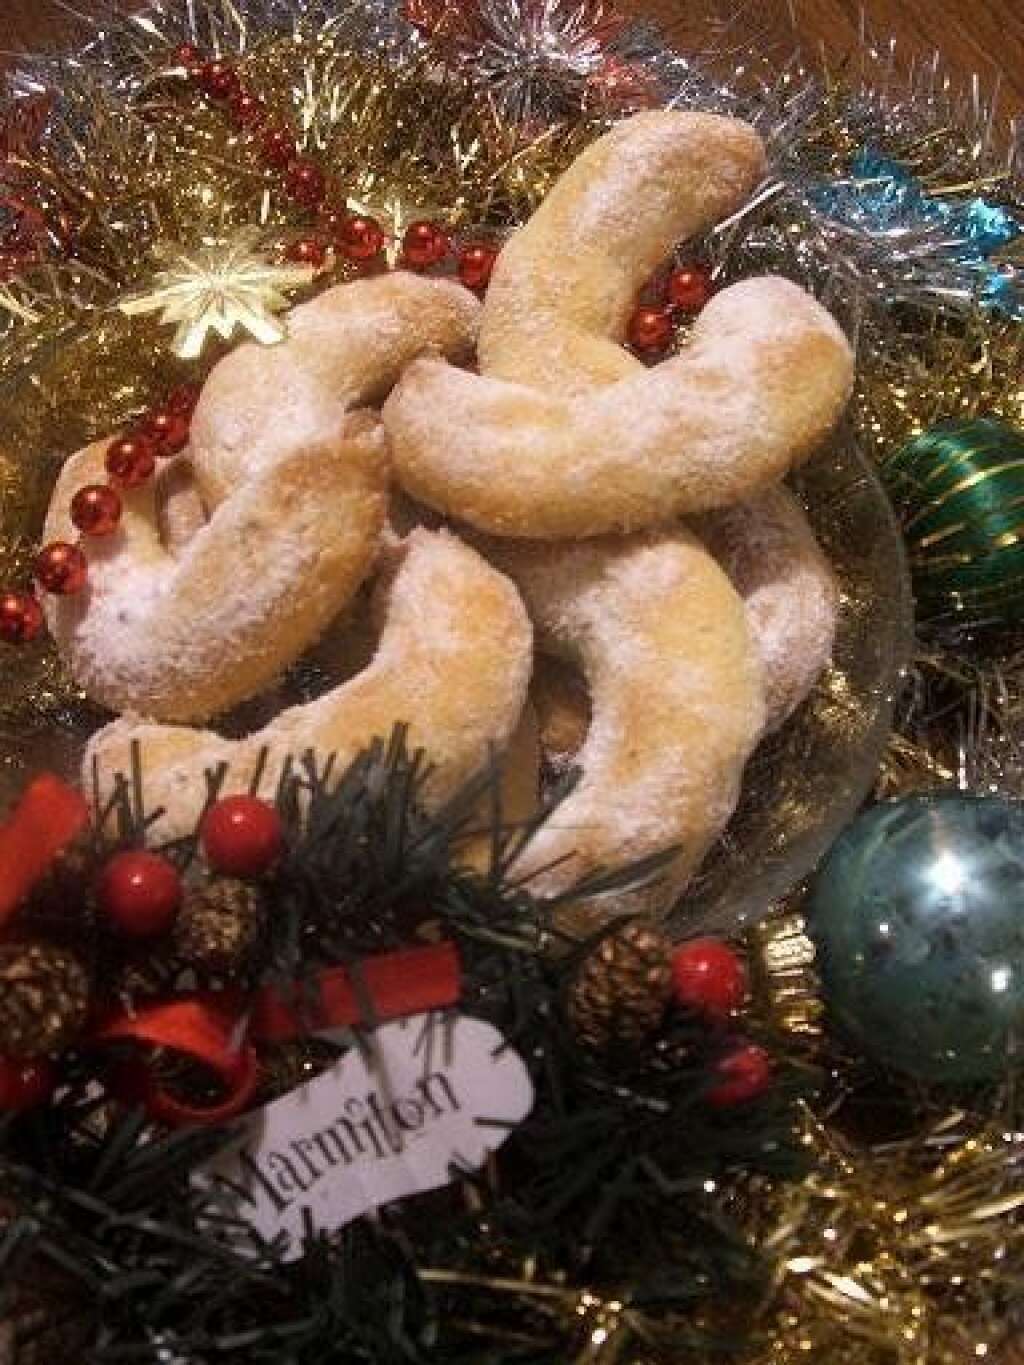 Biscuits de Noël aux noisettes (Nüsskipfel) - <a href="http://www.marmiton.org/recettes/recette_biscuits-de-noel-aux-noisettes-nusskipfel_43155.aspx">Voir la recette sur Marmiton.</a>